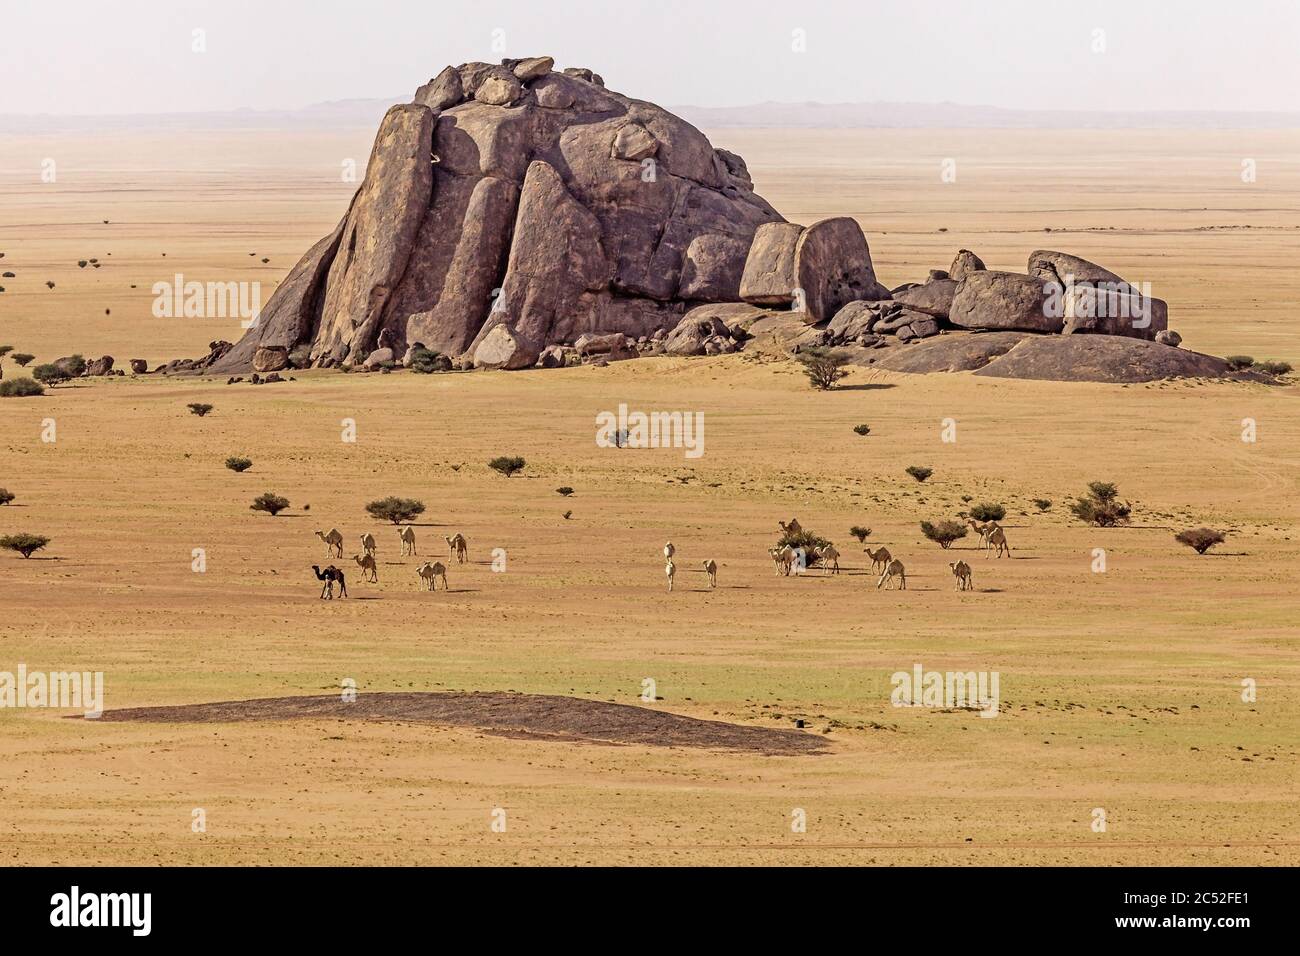 Camels in the desert, Saudi Arabia Stock Photo